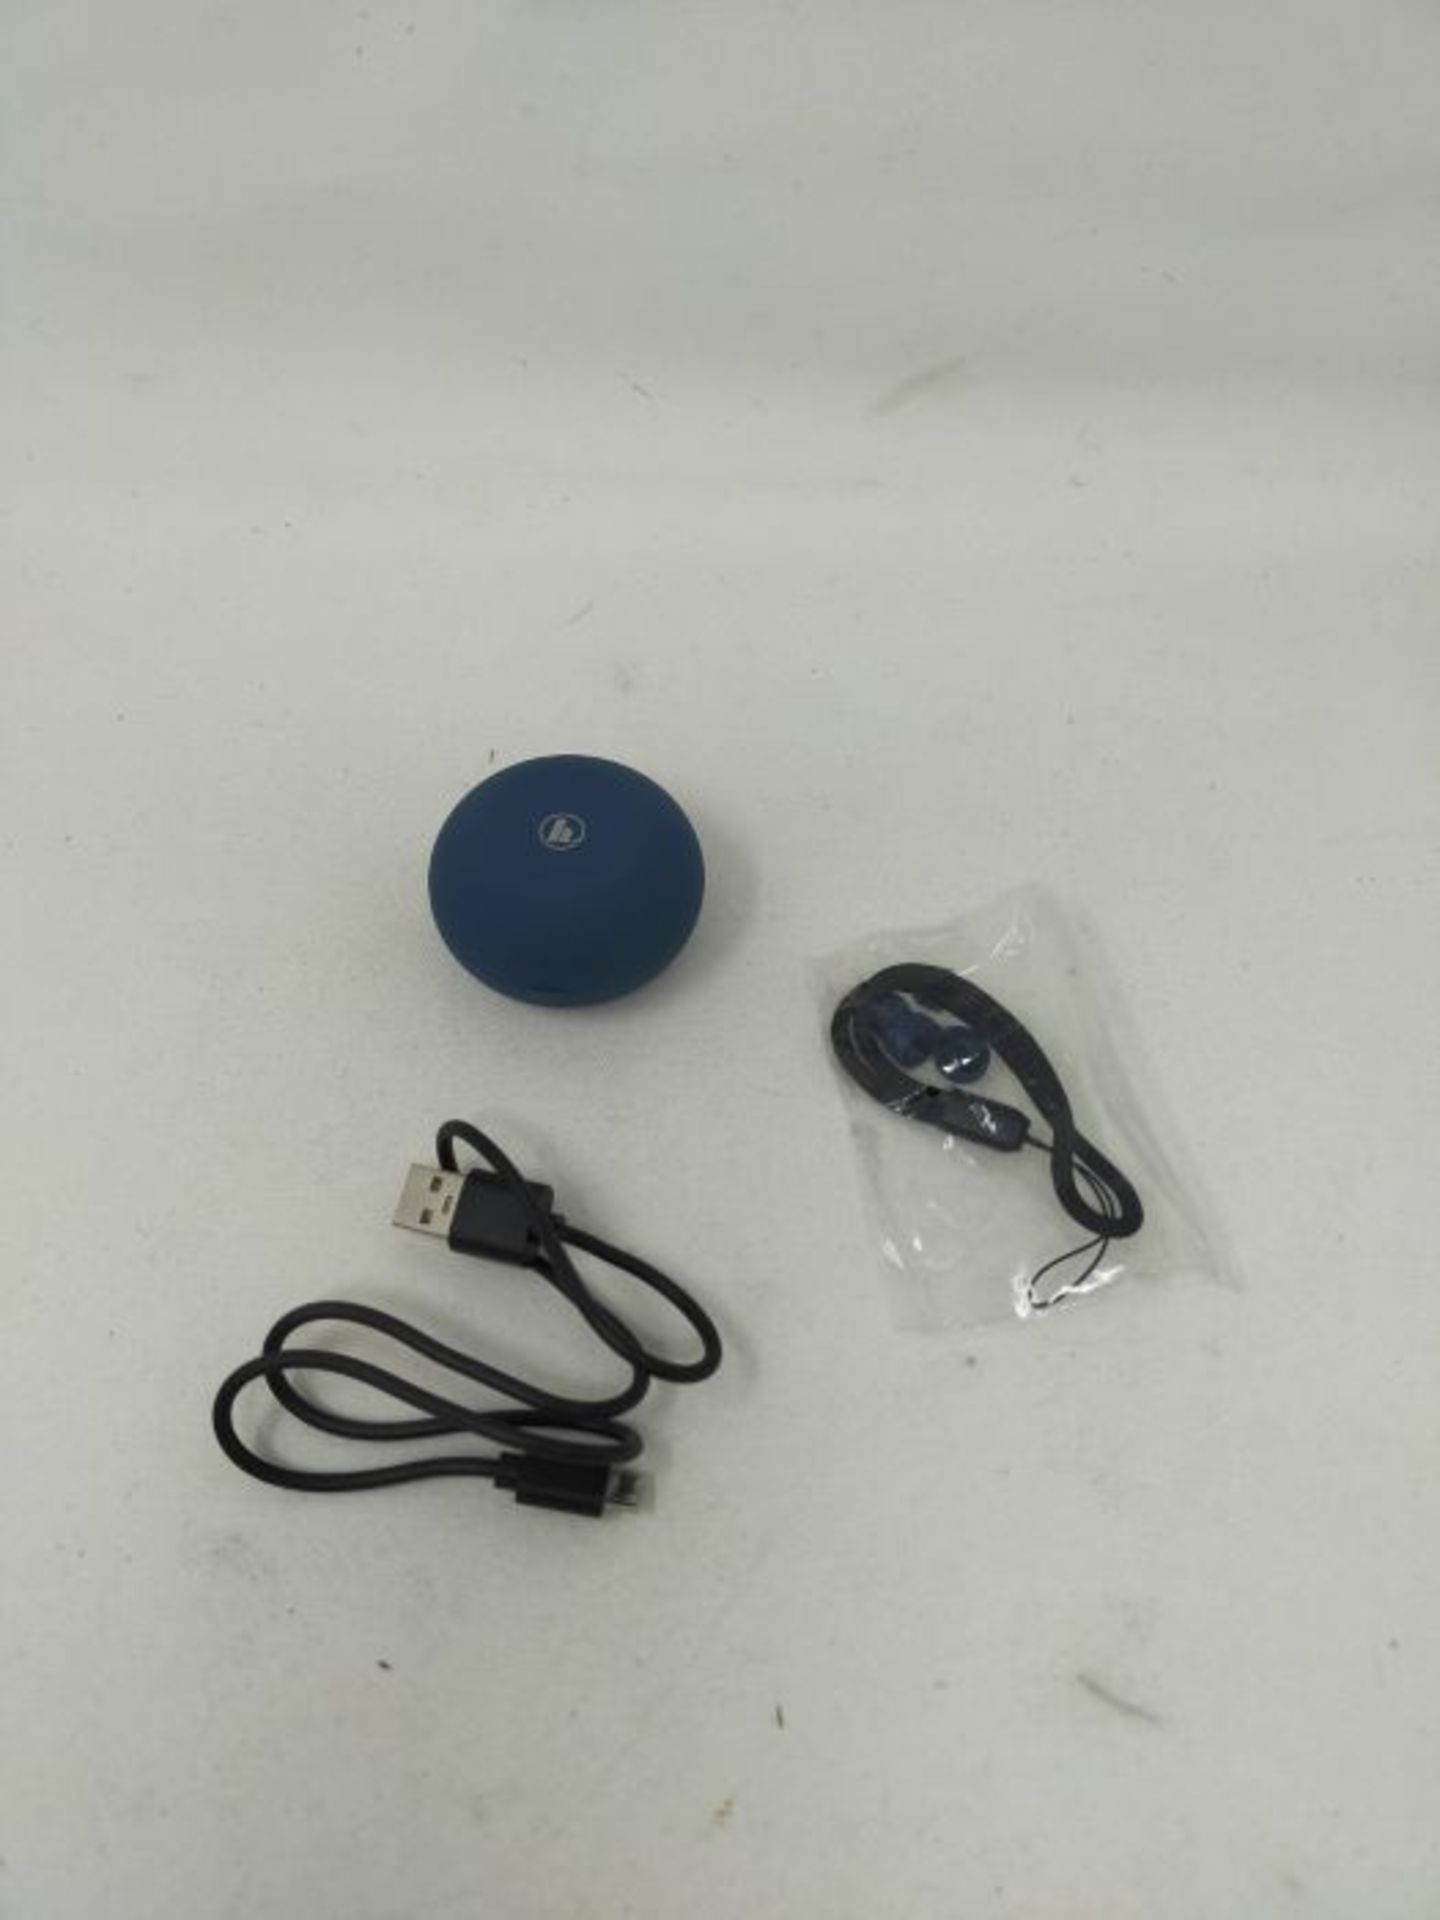 Hama Bluetooth KopfhÃ¶rer blau kabellos (True Wireless In Ear KopfhÃ¶rer mit Sprac - Image 3 of 3